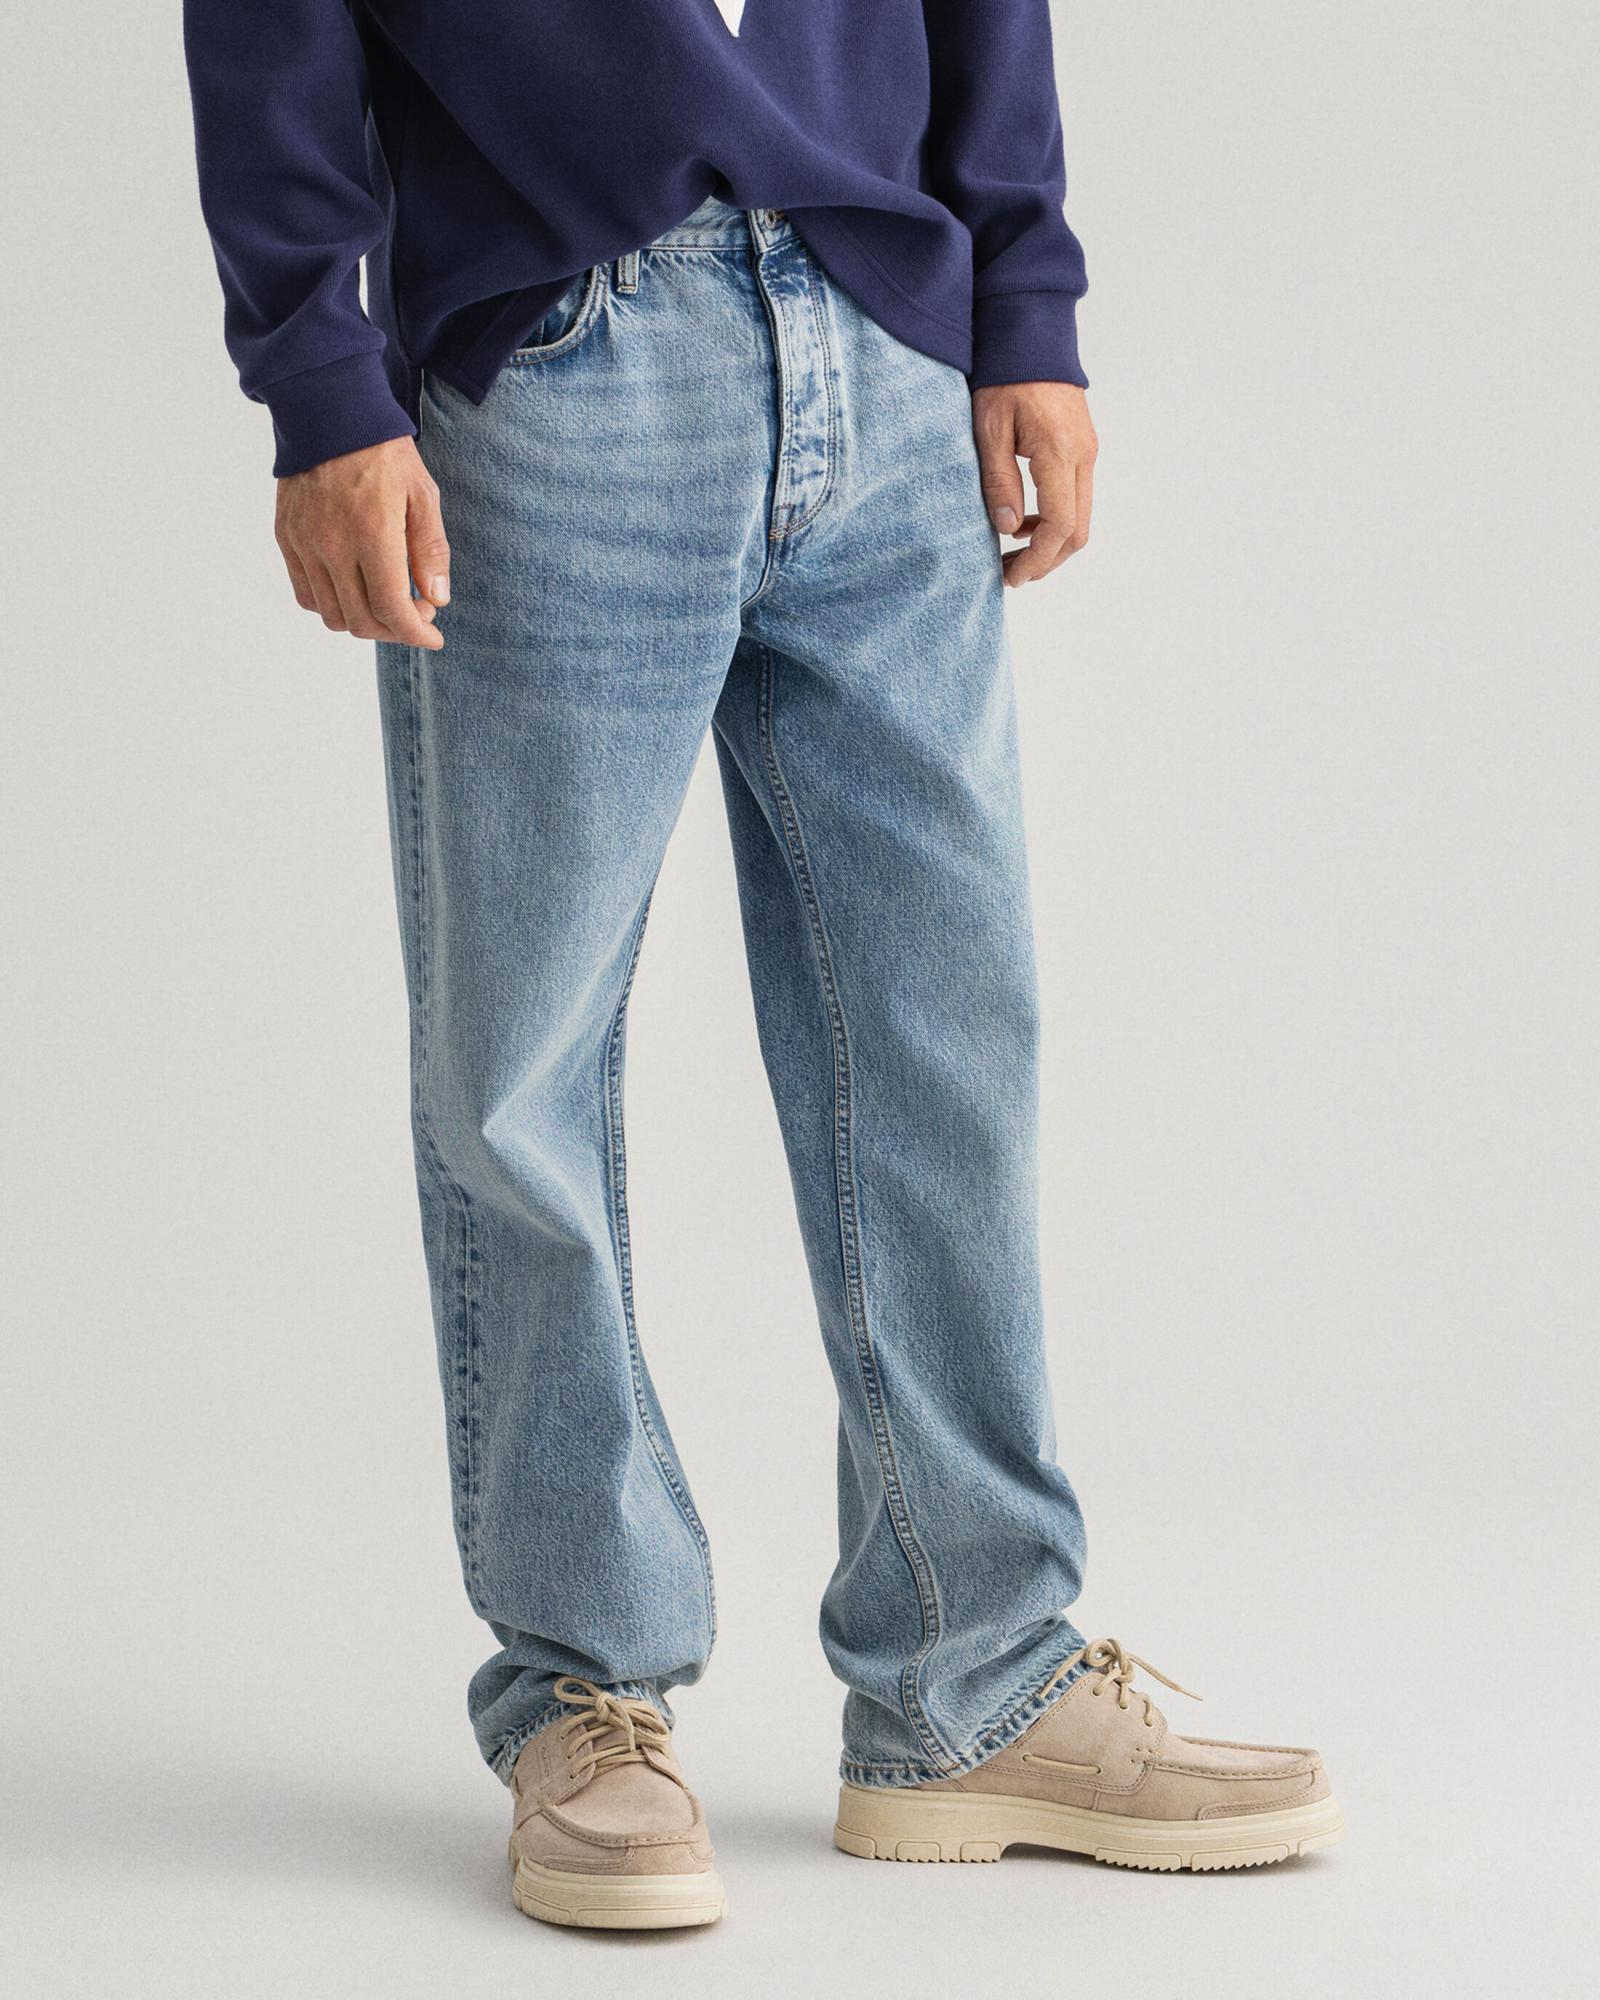 Мужские джинсы Gant, синие, цвет синий, размер 32